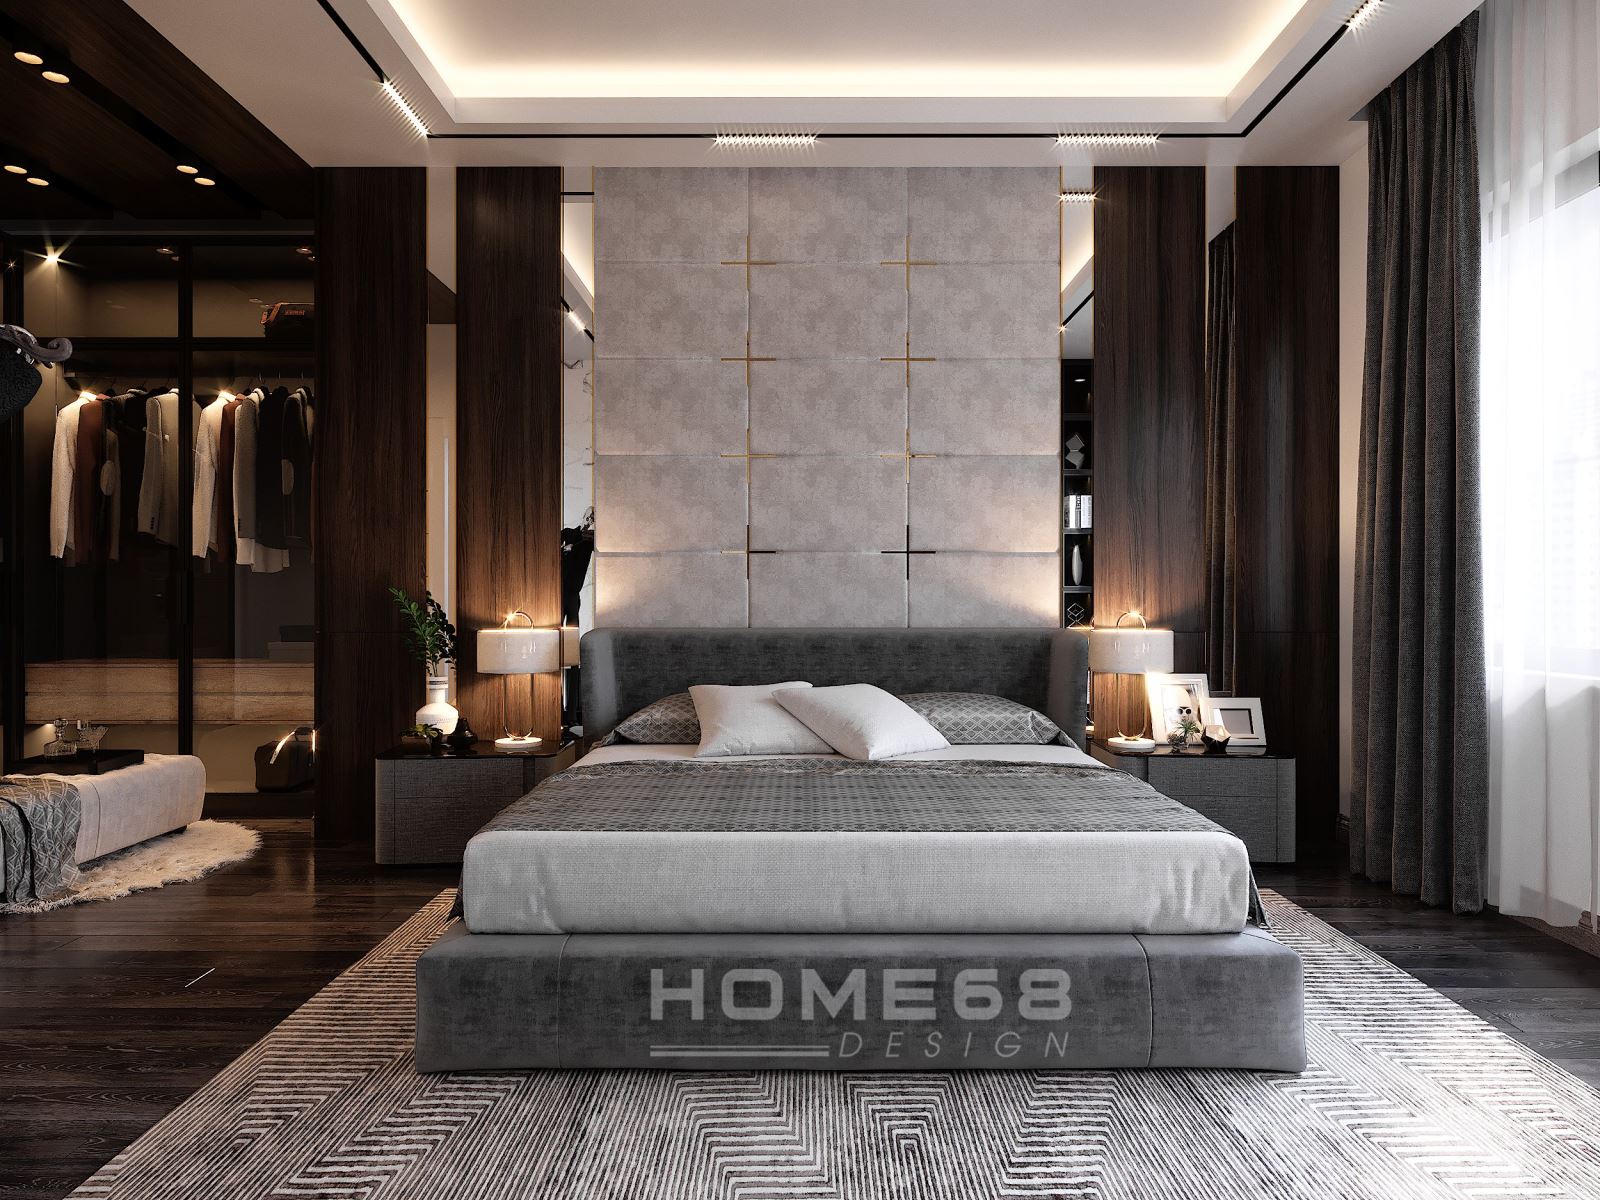 Bạn muốn có một phòng ngủ tiện nghi và hiện đại? Sự kết hợp hoàn hảo giữa màu sắc, ánh sáng và đồ nội thất sẽ khiến căn phòng của bạn trở nên đầy đủ và sang trọng hơn bao giờ hết. Đến với dịch vụ thiết kế phòng ngủ hiện đại của chúng tôi, bạn sẽ được trải nghiệm một không gian sống đẳng cấp và tiện nghi nhất.